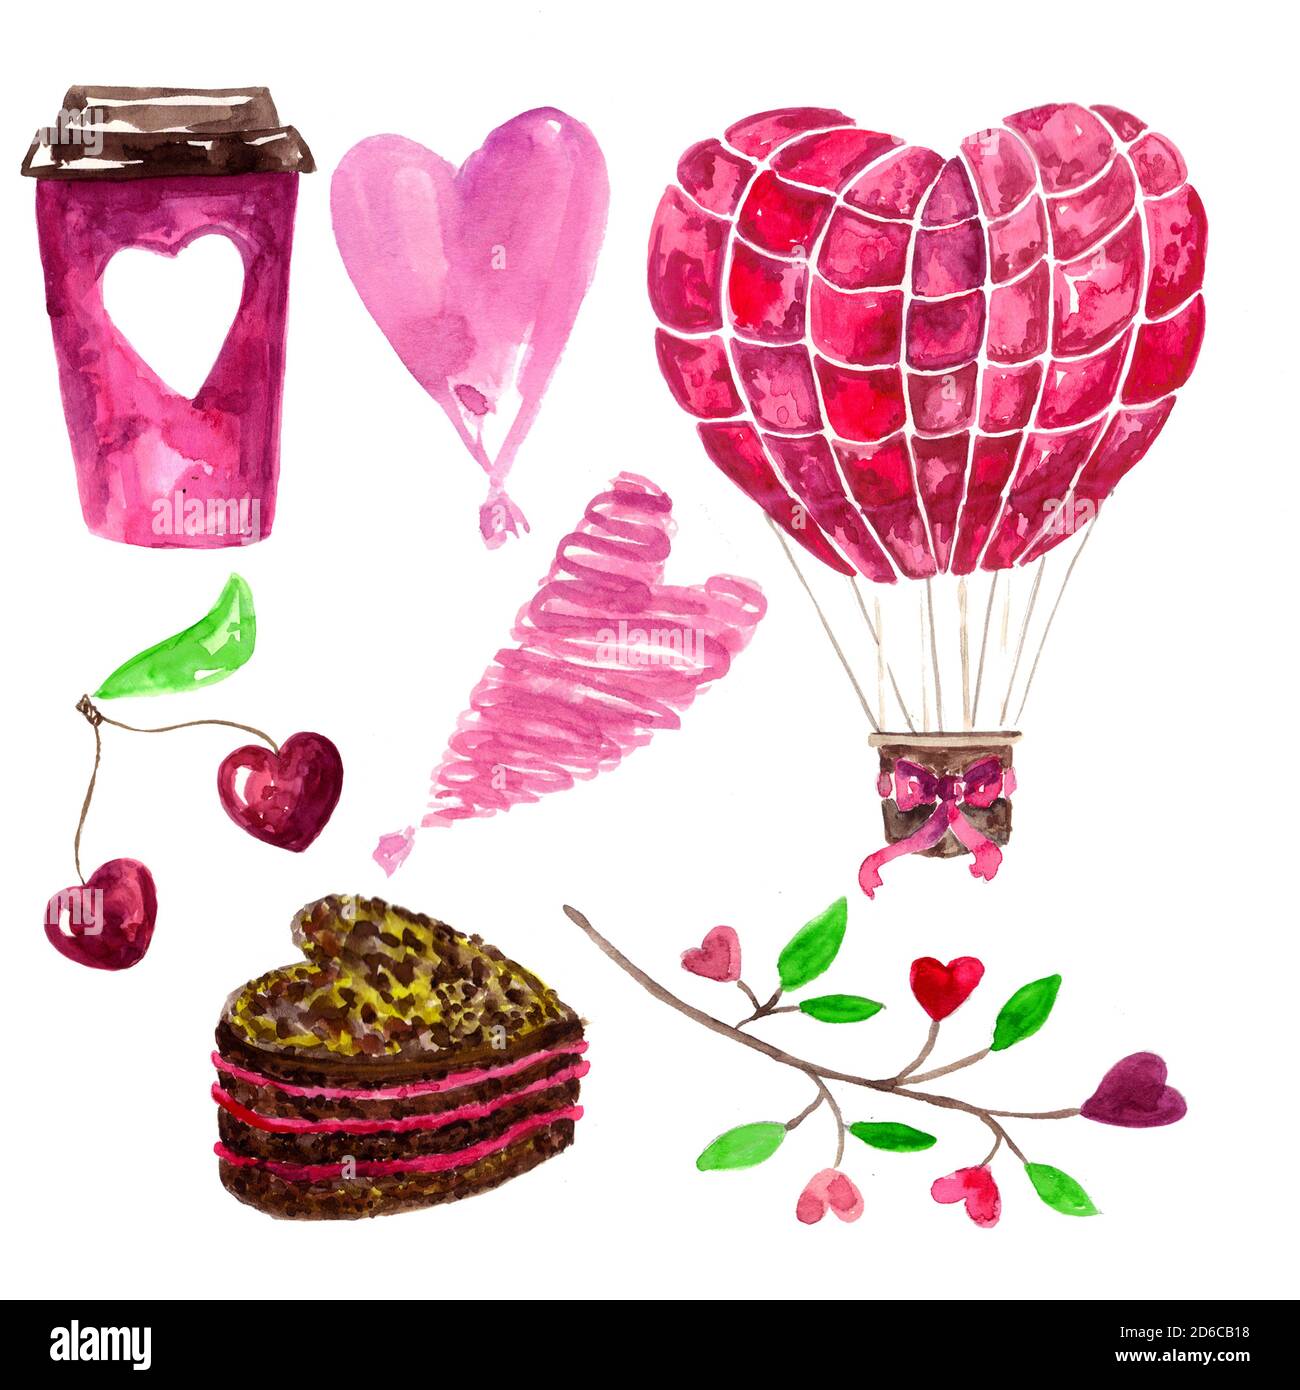 Symbole d'amour, de coeur, de couleur rose.Aquarelle dessinée à la main. Tasse de café, cerise, aérostat, gâteau, conception de branche pour les invitations et les cartes de vœux Banque D'Images